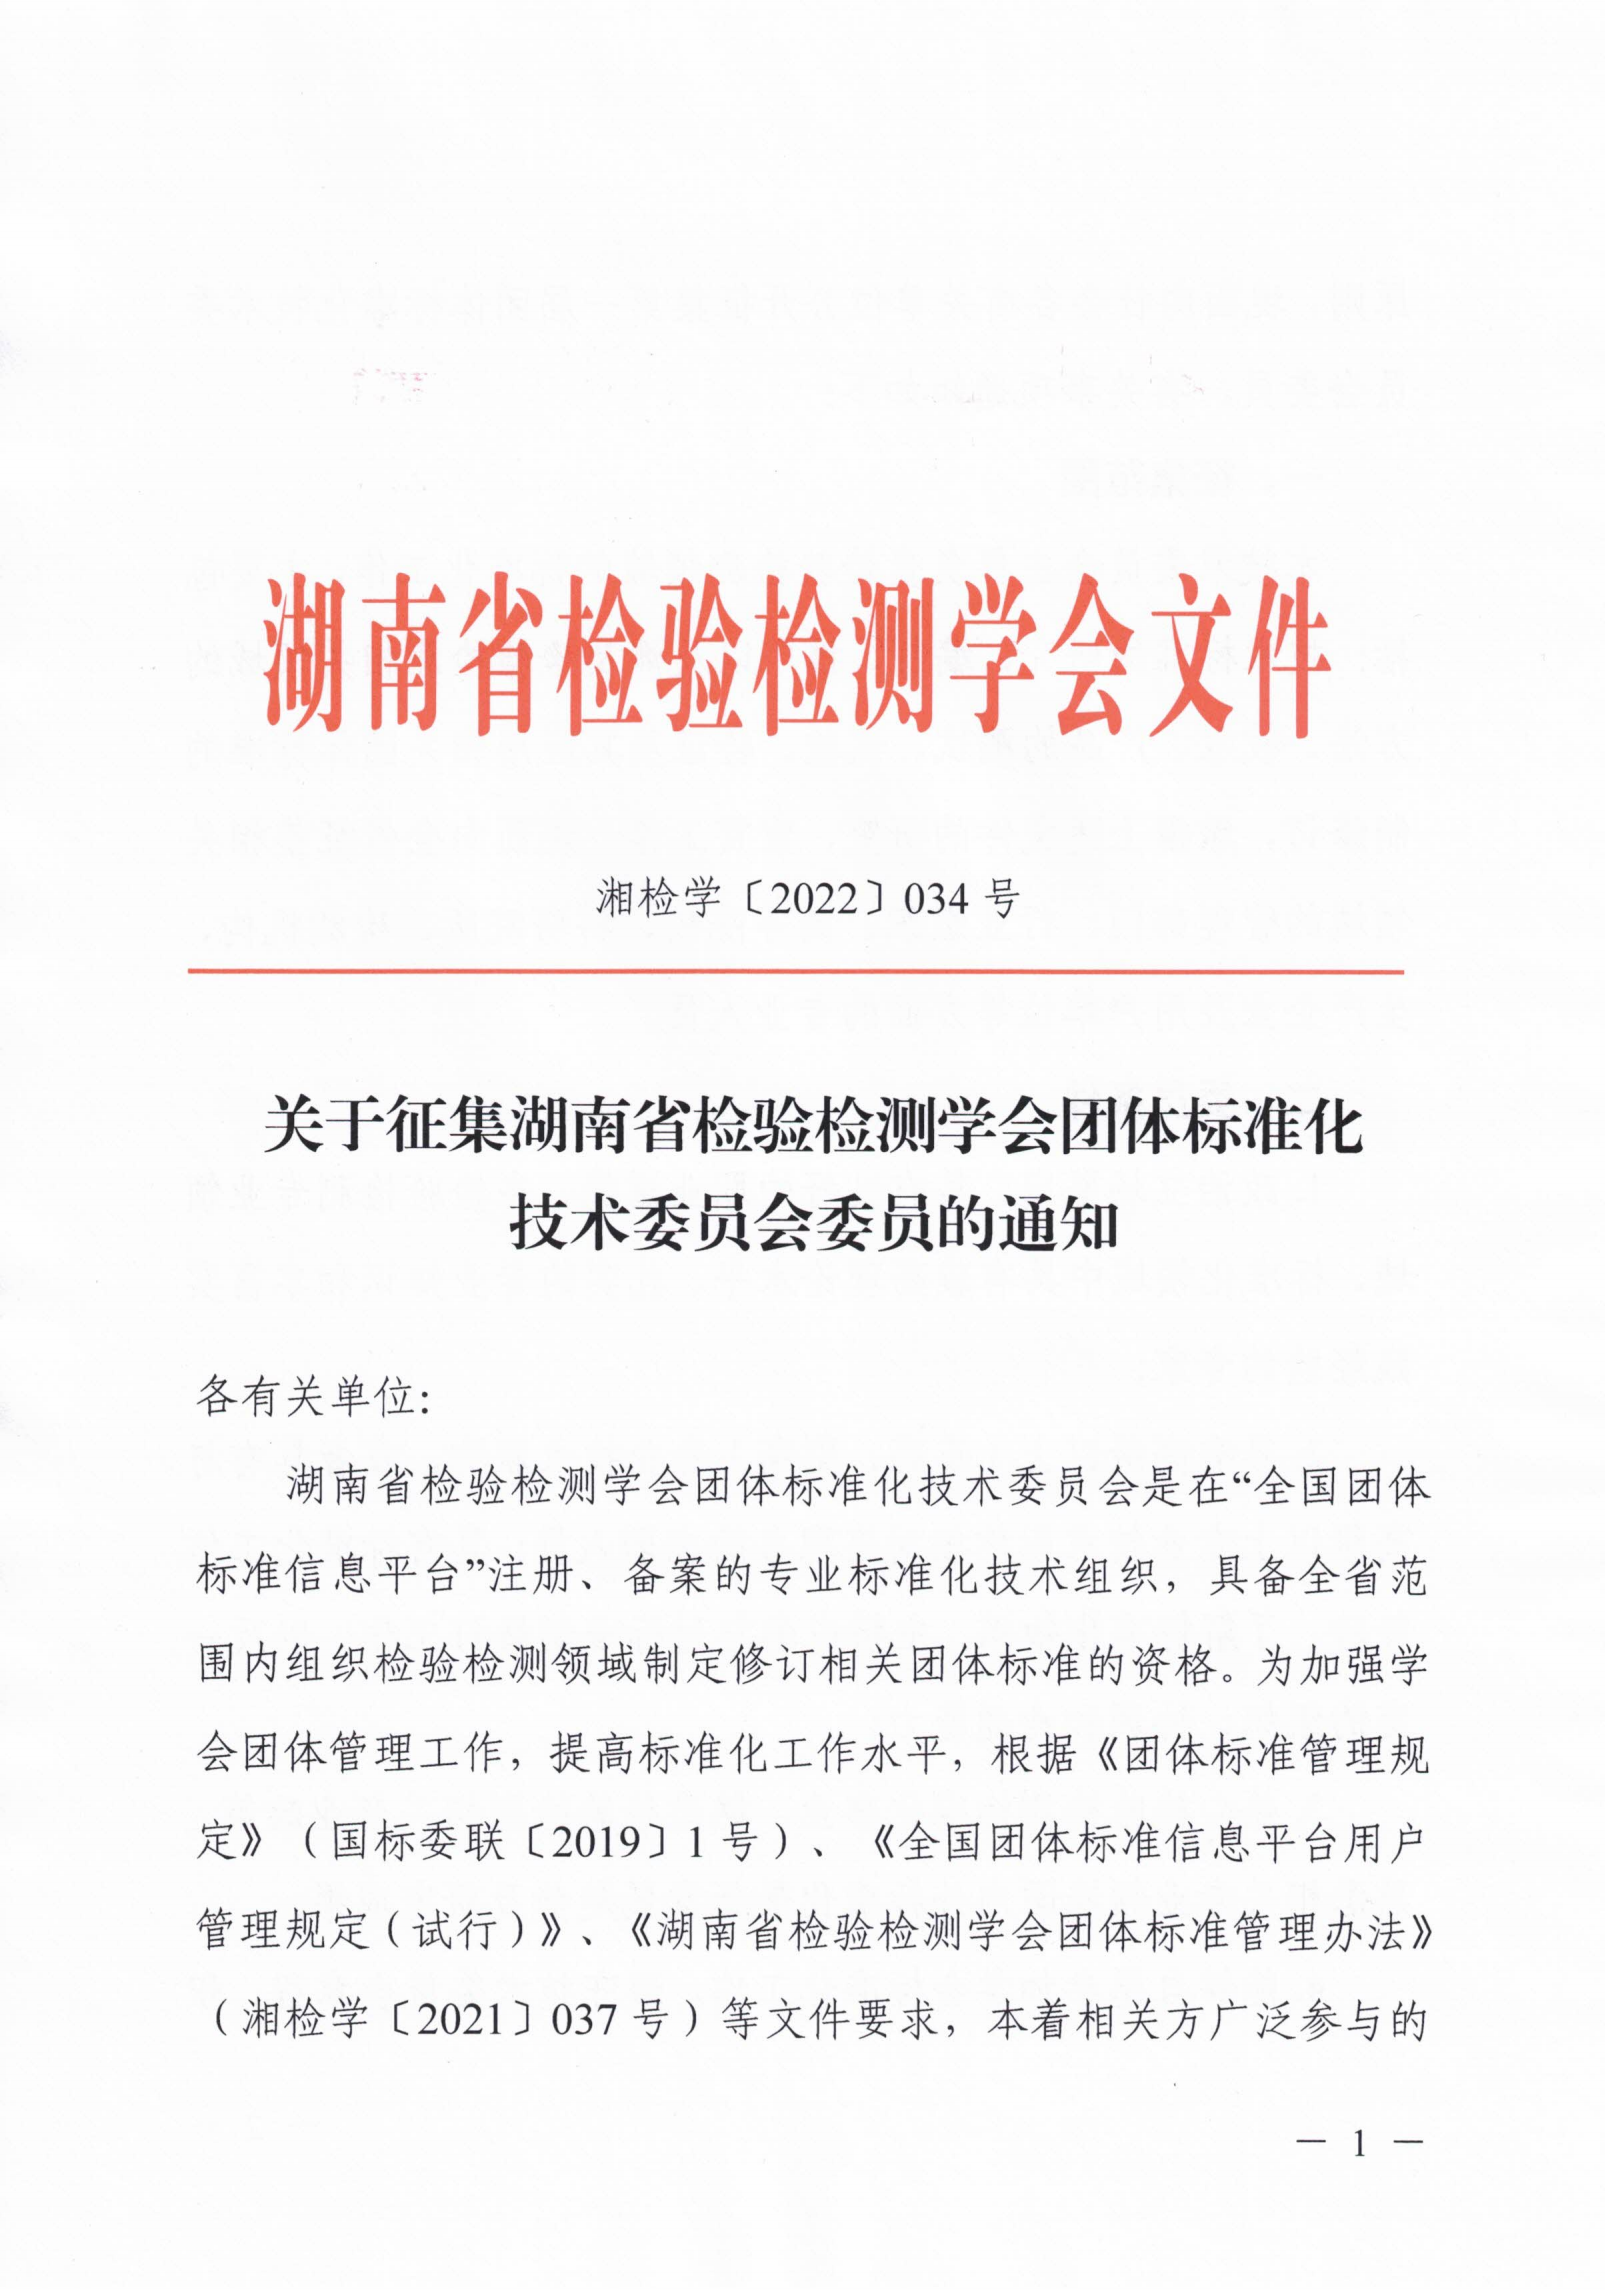 关于征集湖南省检验检测学会团体标准化技术委员会委员的通知_00.png